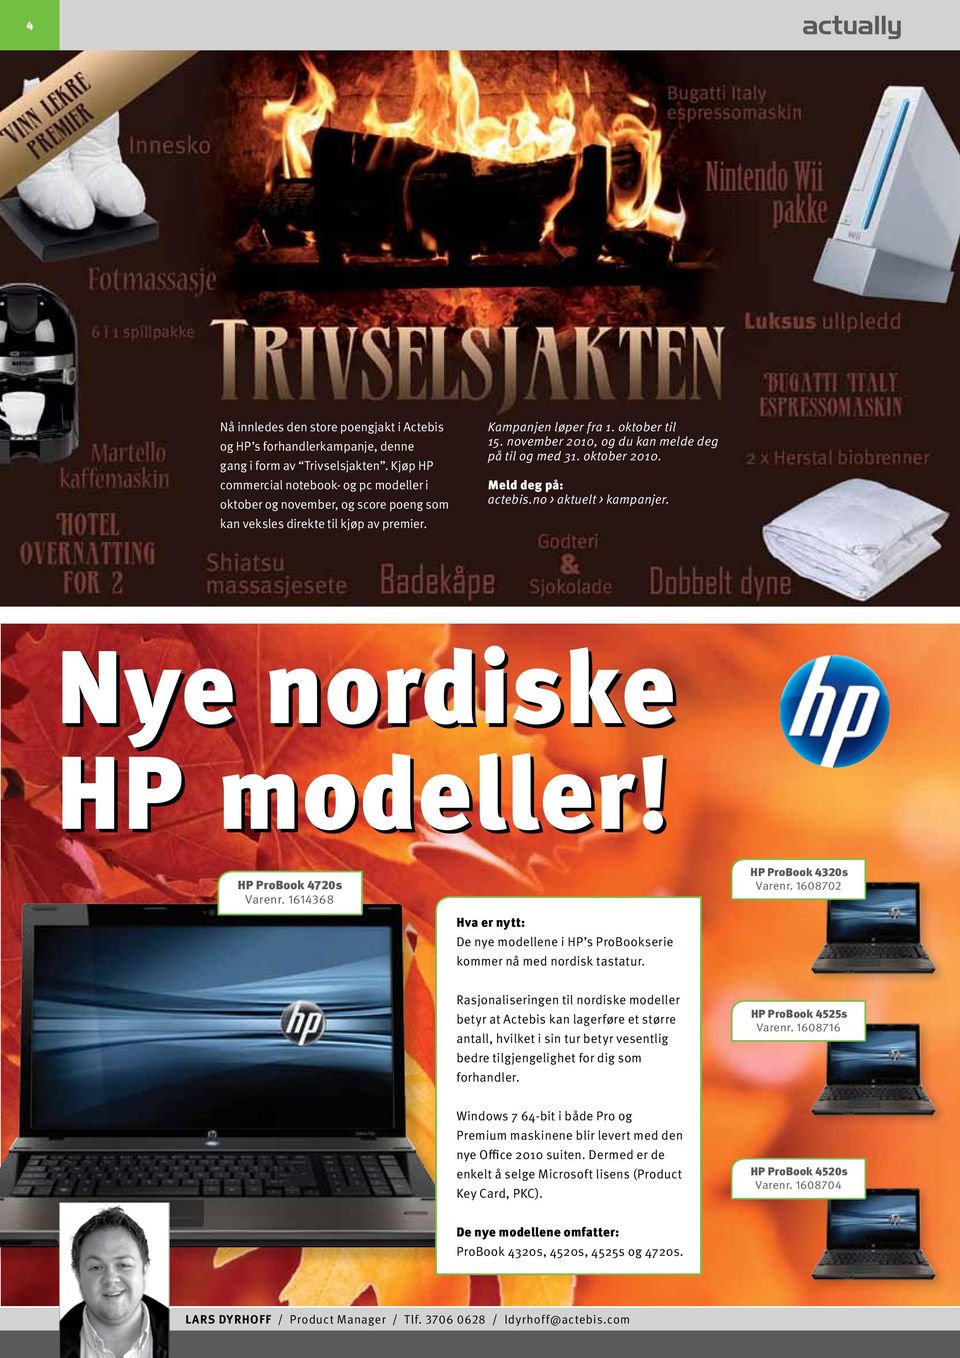 november 2010, og du kan melde deg på til og med 31. oktober 2010. Meld deg på: actebis.no > aktuelt > kampanjer. Nye nordiske HP modeller! HP ProBook 4720s Varenr.